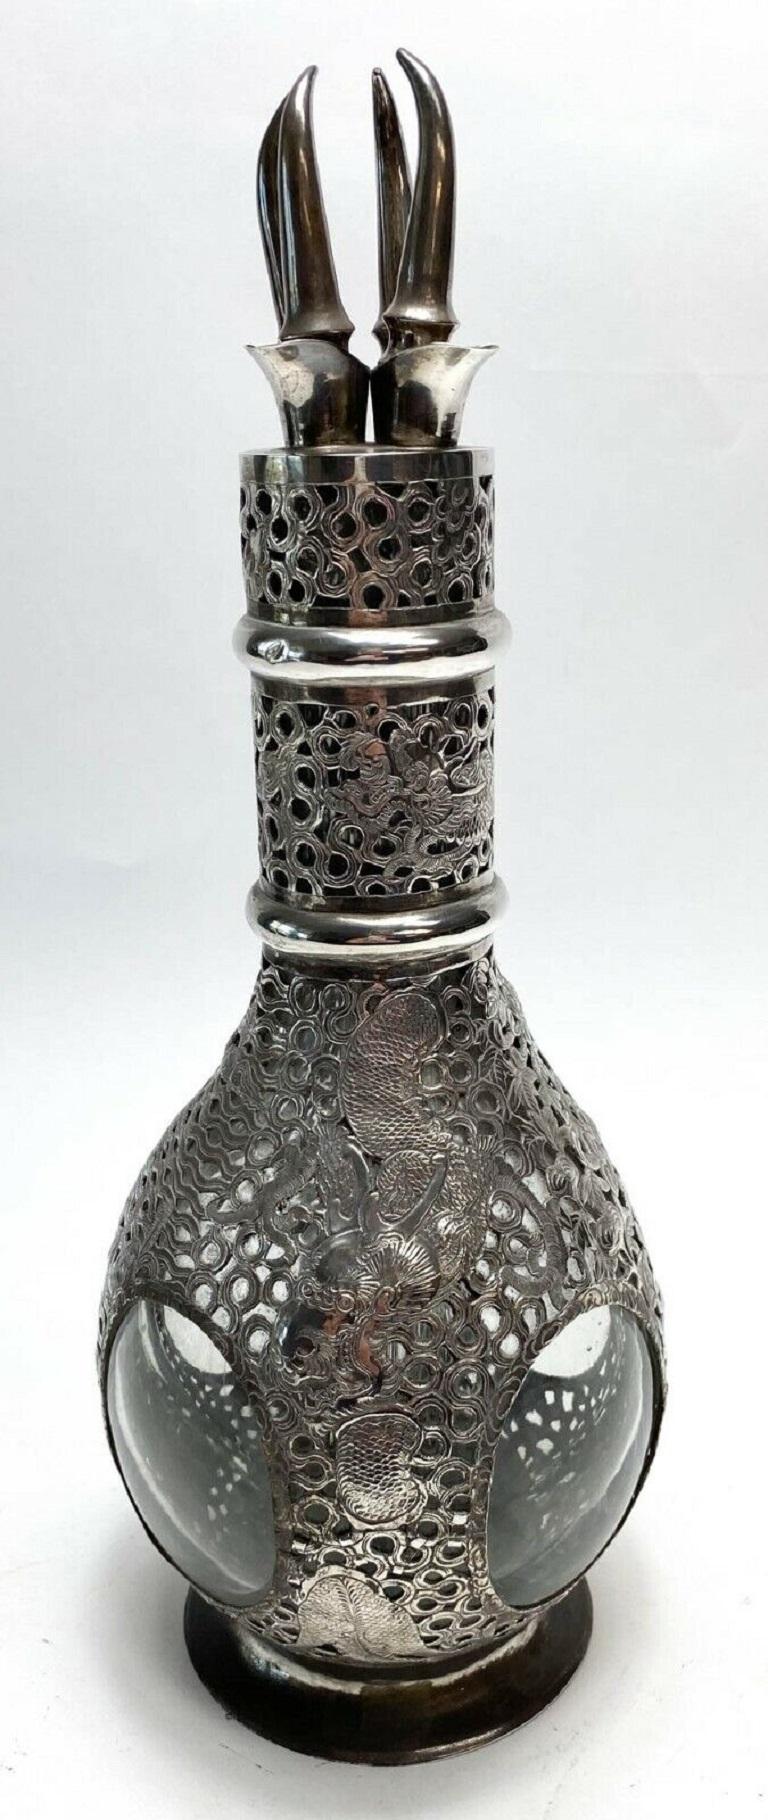 Chinesische Silber-Overlay-Vierfach-Likör-Karaffe, um 1920

Der silberne Dekanter hat 4 separate Fächer für Alkohol. Jedes Fach mit einem anderen Muster auf dem silbernen Overlay. Auf jeder Seite der Karaffe sind Bambus, eine Seeszene und ein Drache